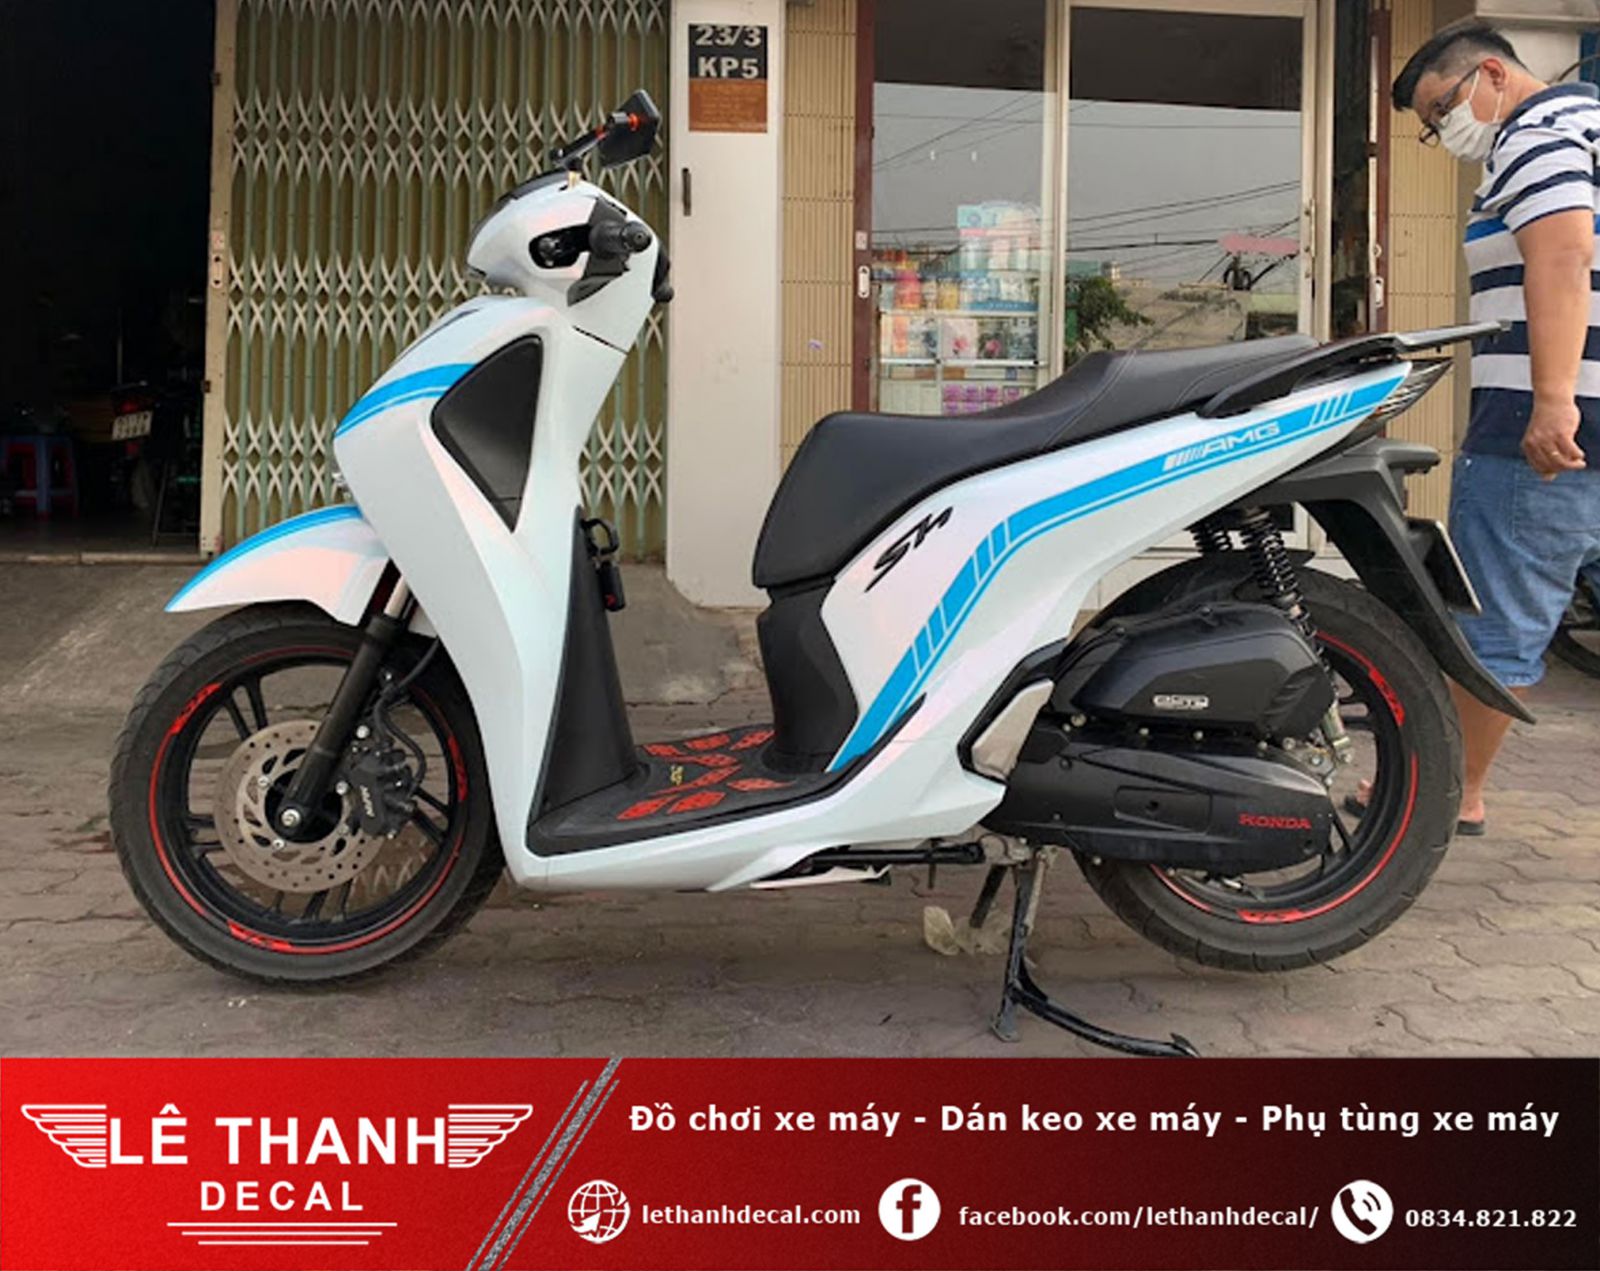 [TOP] 10+ tiệm dán decal xe máy tại quận Tân Phú uy tín, chất lượng 2023 